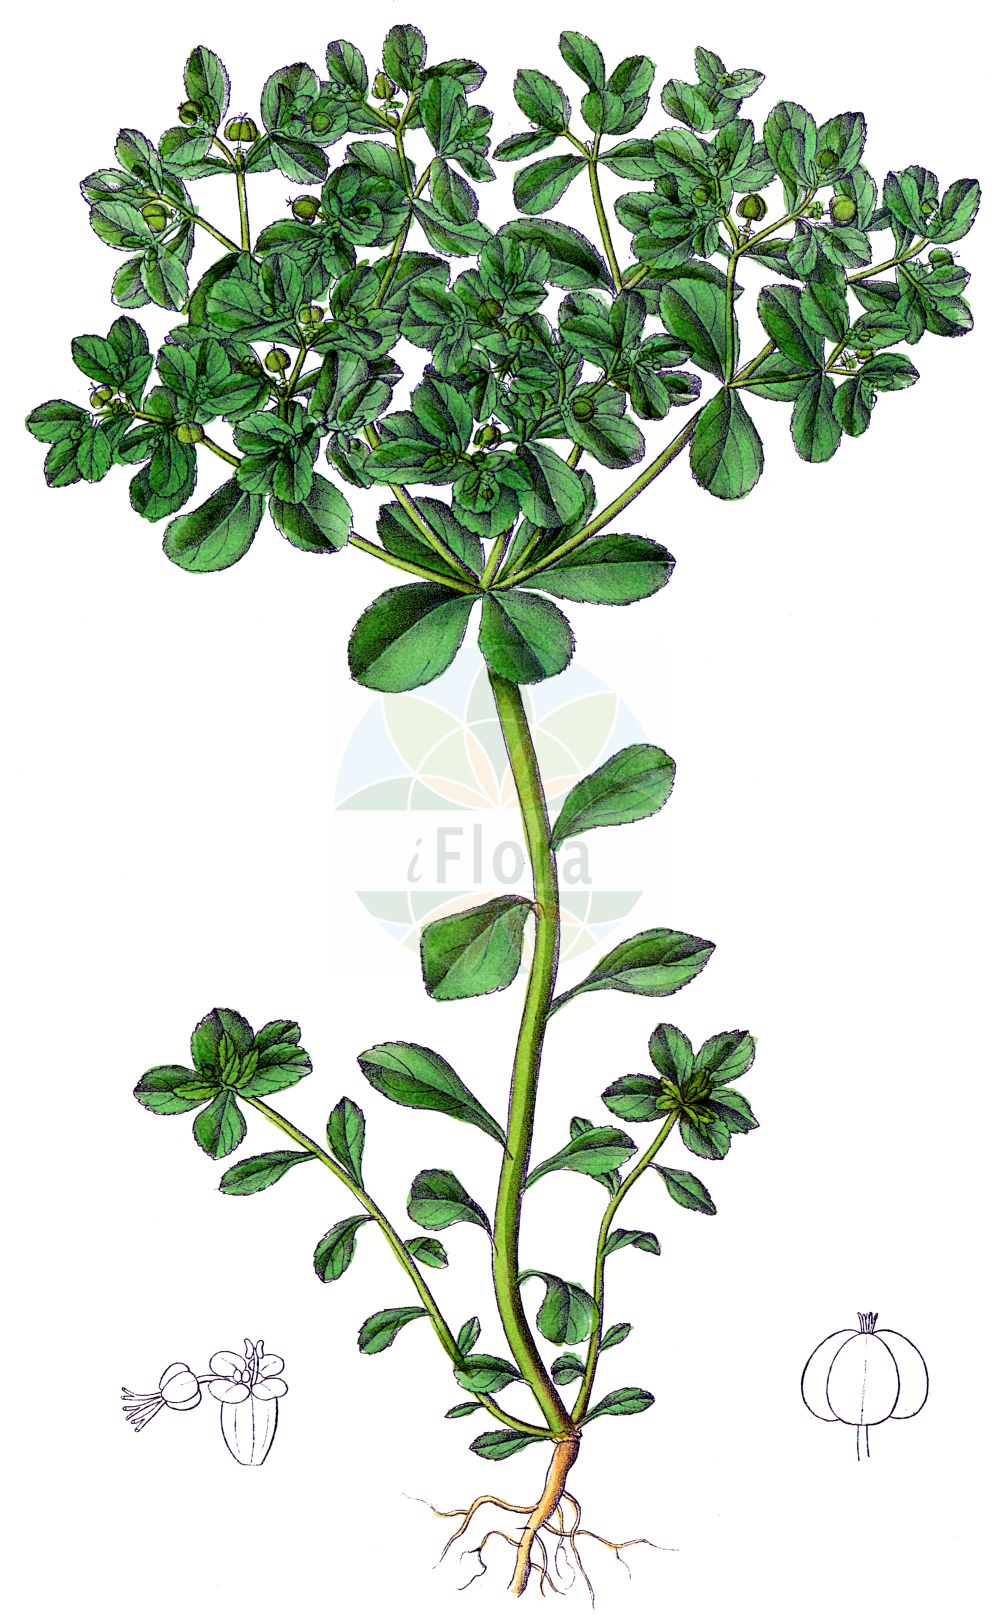 Historische Abbildung von Euphorbia helioscopia (Sonnenwend-Wolfsmilch - Sun Spurge). Das Bild zeigt Blatt, Bluete, Frucht und Same. ---- Historical Drawing of Euphorbia helioscopia (Sonnenwend-Wolfsmilch - Sun Spurge). The image is showing leaf, flower, fruit and seed.(Euphorbia helioscopia,Sonnenwend-Wolfsmilch,Sun Spurge,Euphorbia helioscopia,Euphorbion helioscopium,Tithymalus helioscopius,Sonnenwend-Wolfsmilch,Sun Spurge,Madwoman's Milk,Umbrella Milkweed,Euphorbia,Wolfsmilch,Spurge,Euphorbiaceae,Wolfsmilchgewächse,Spurge family,Blatt,Bluete,Frucht,Same,leaf,flower,fruit,seed,Dietrich (1833-1844))